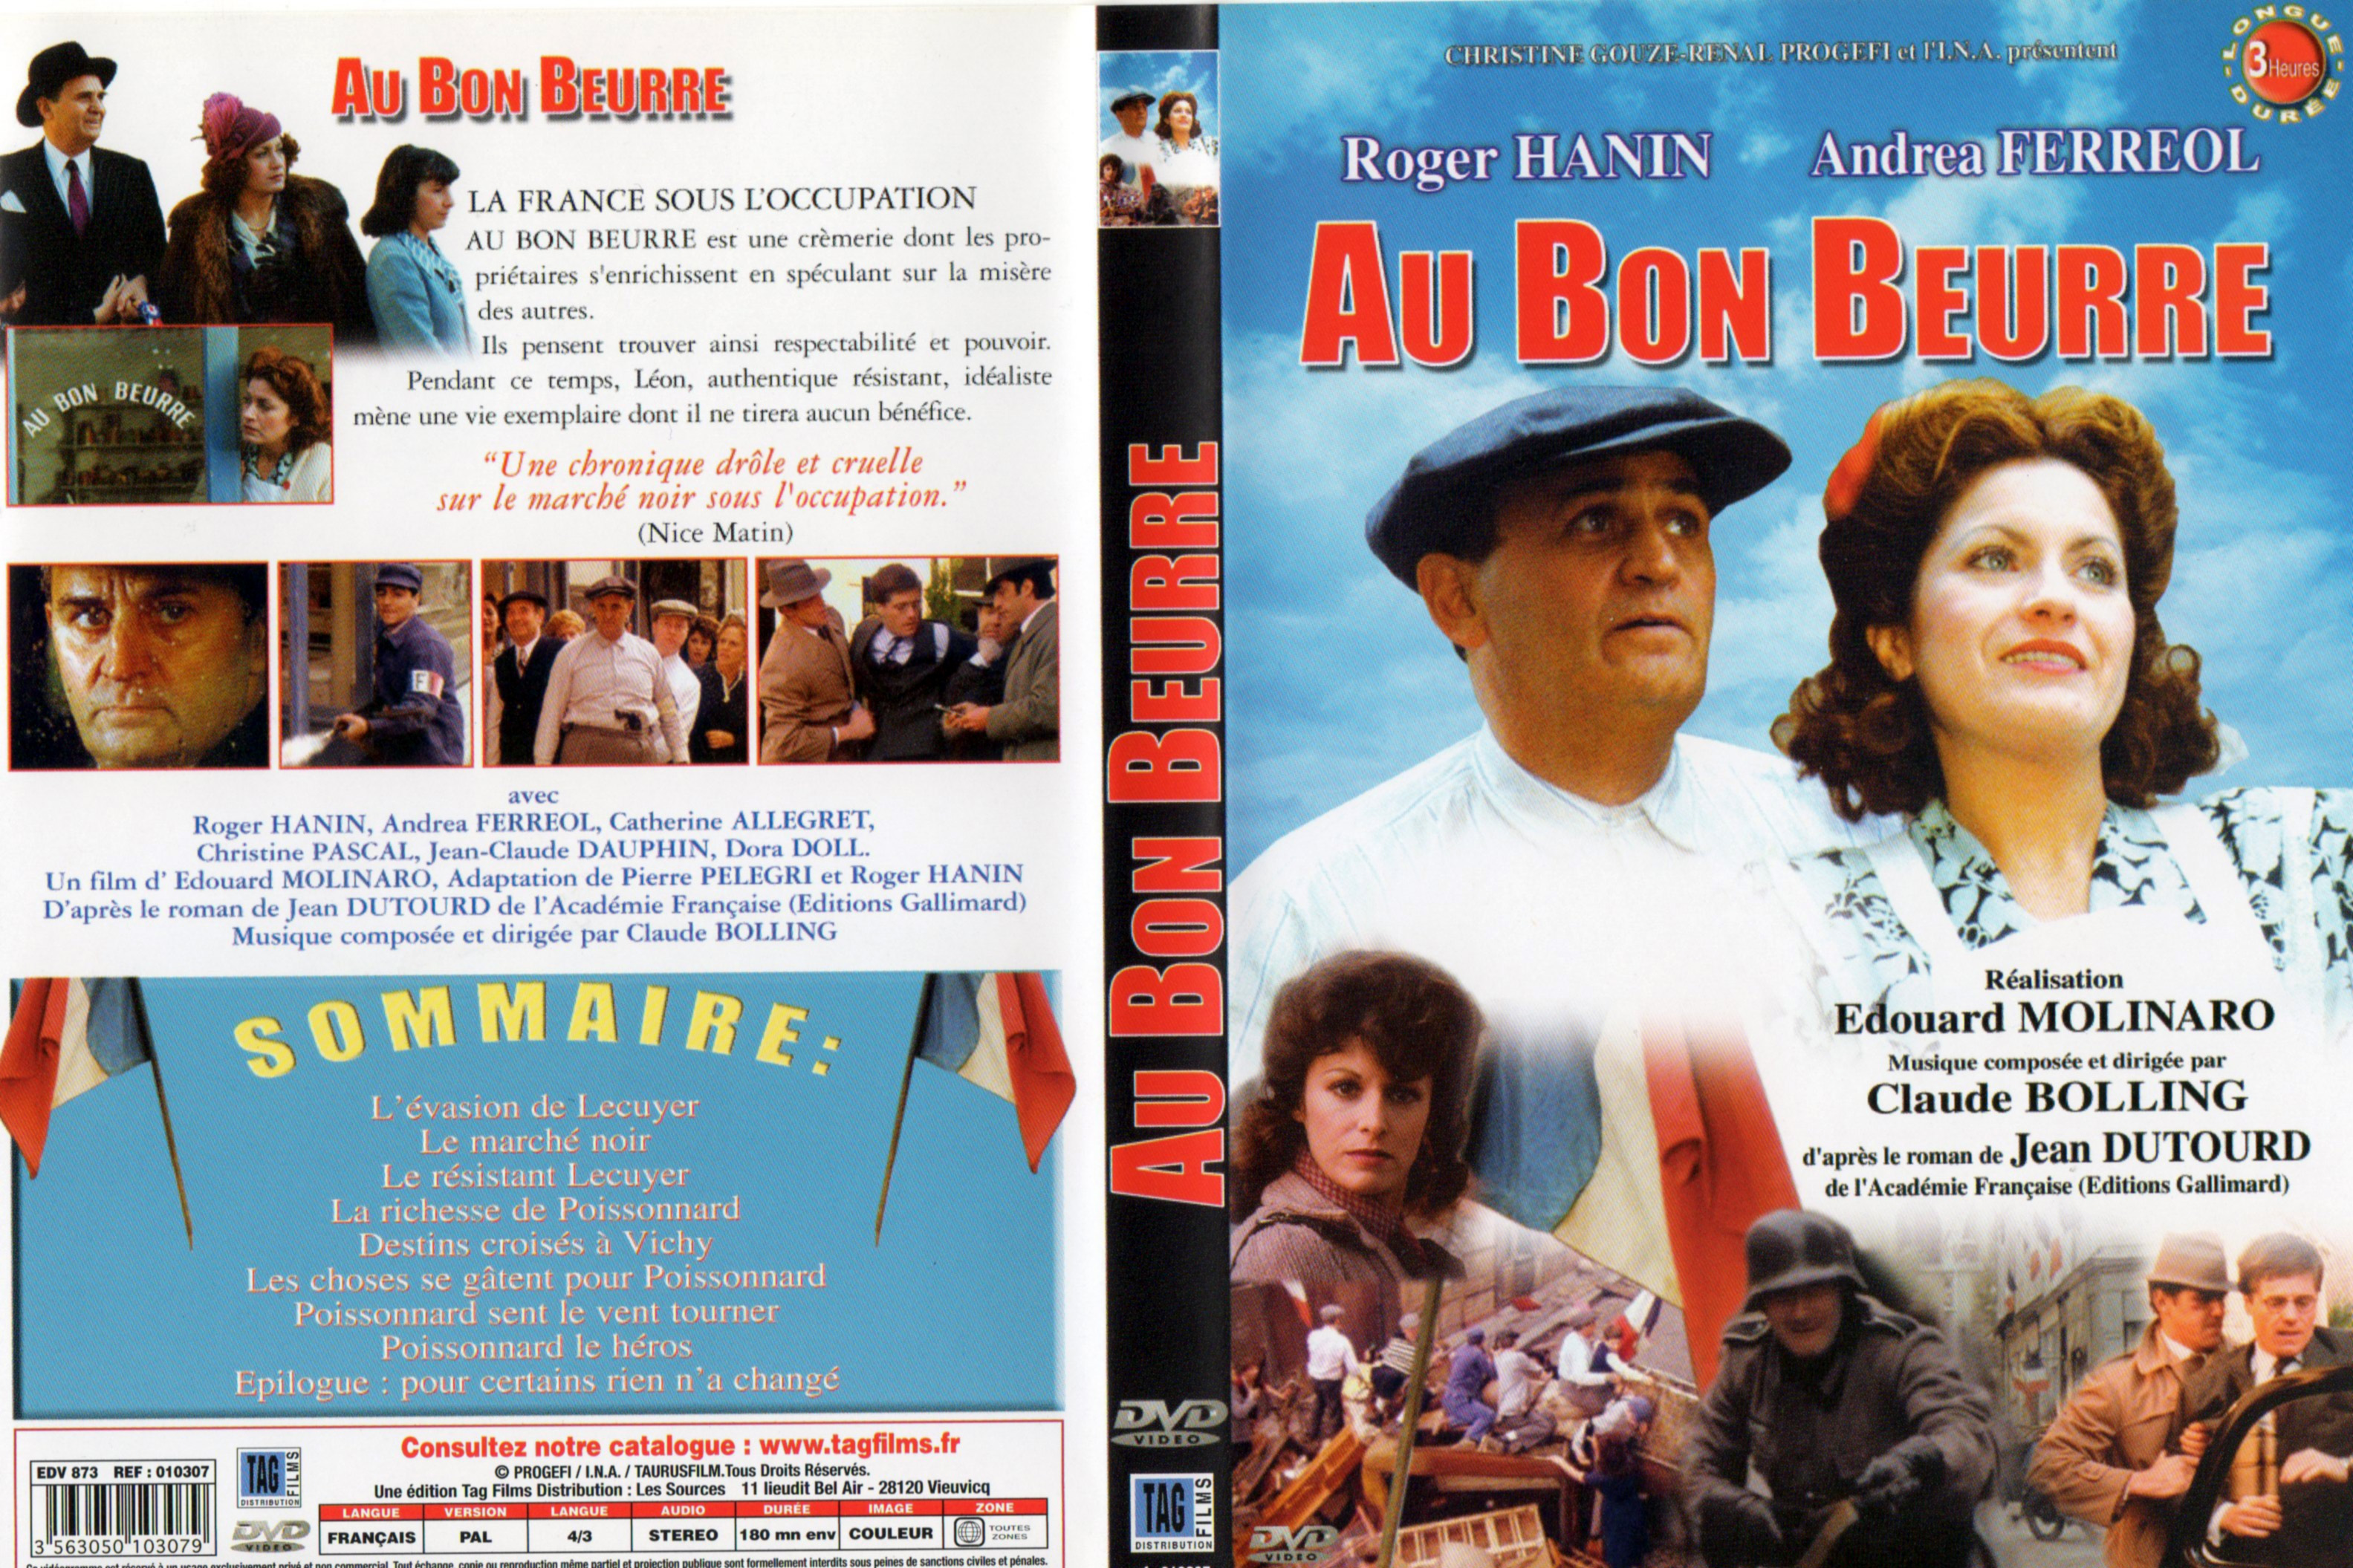 Jaquette DVD de Au bon beurre Cinéma Passion